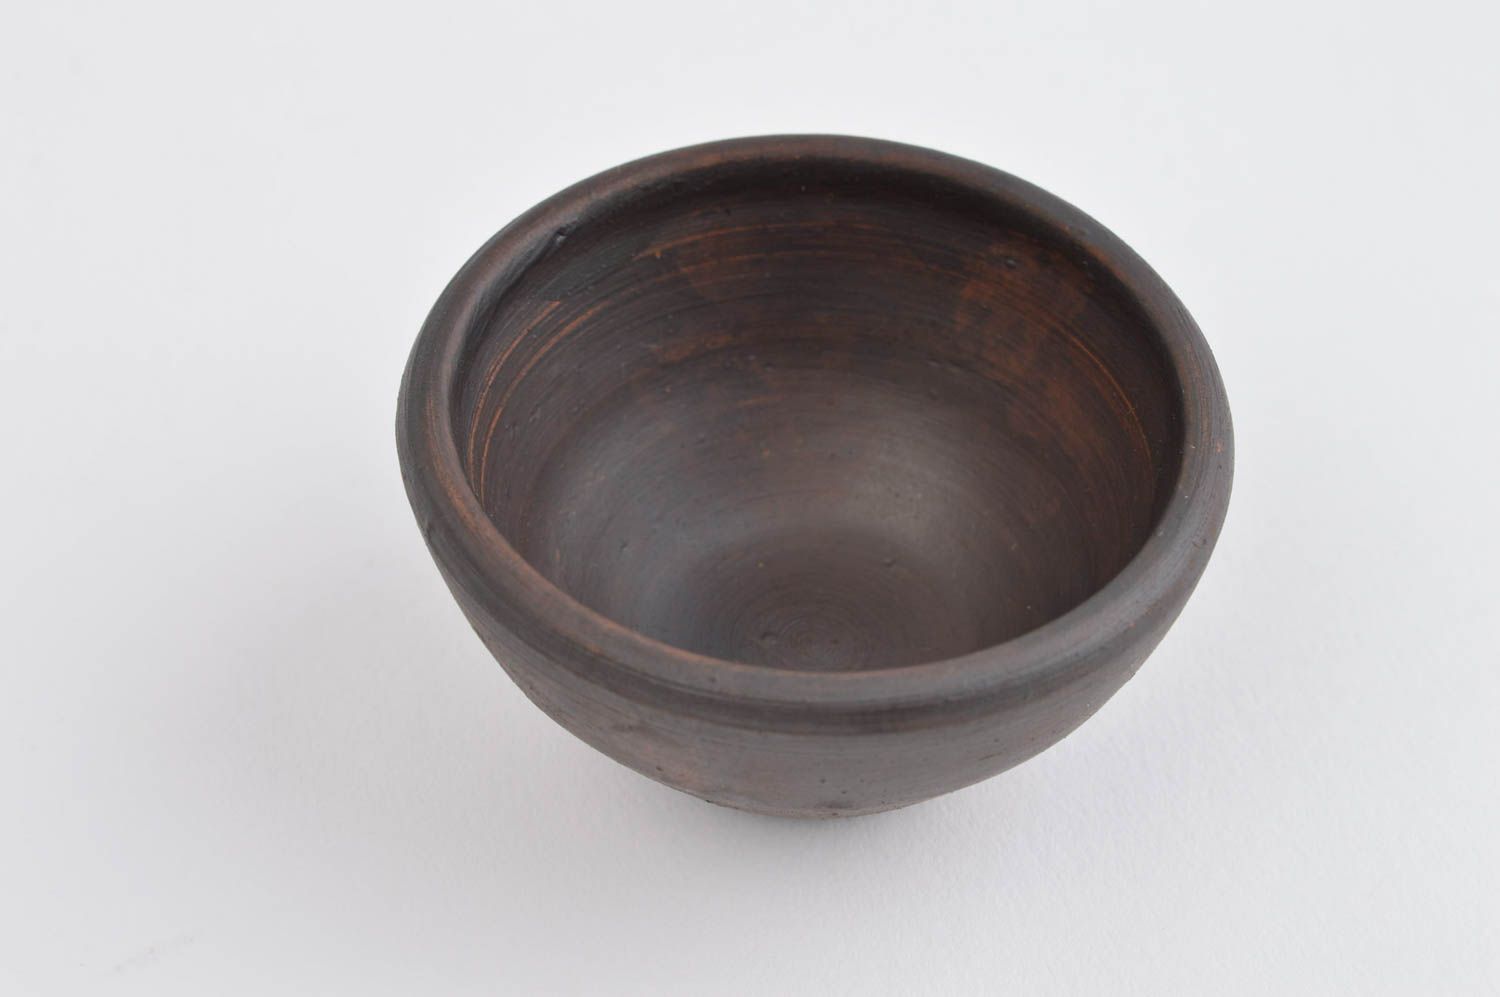 Unusual handmade ceramic bowl kitchen supplies home goods kitchen design photo 4